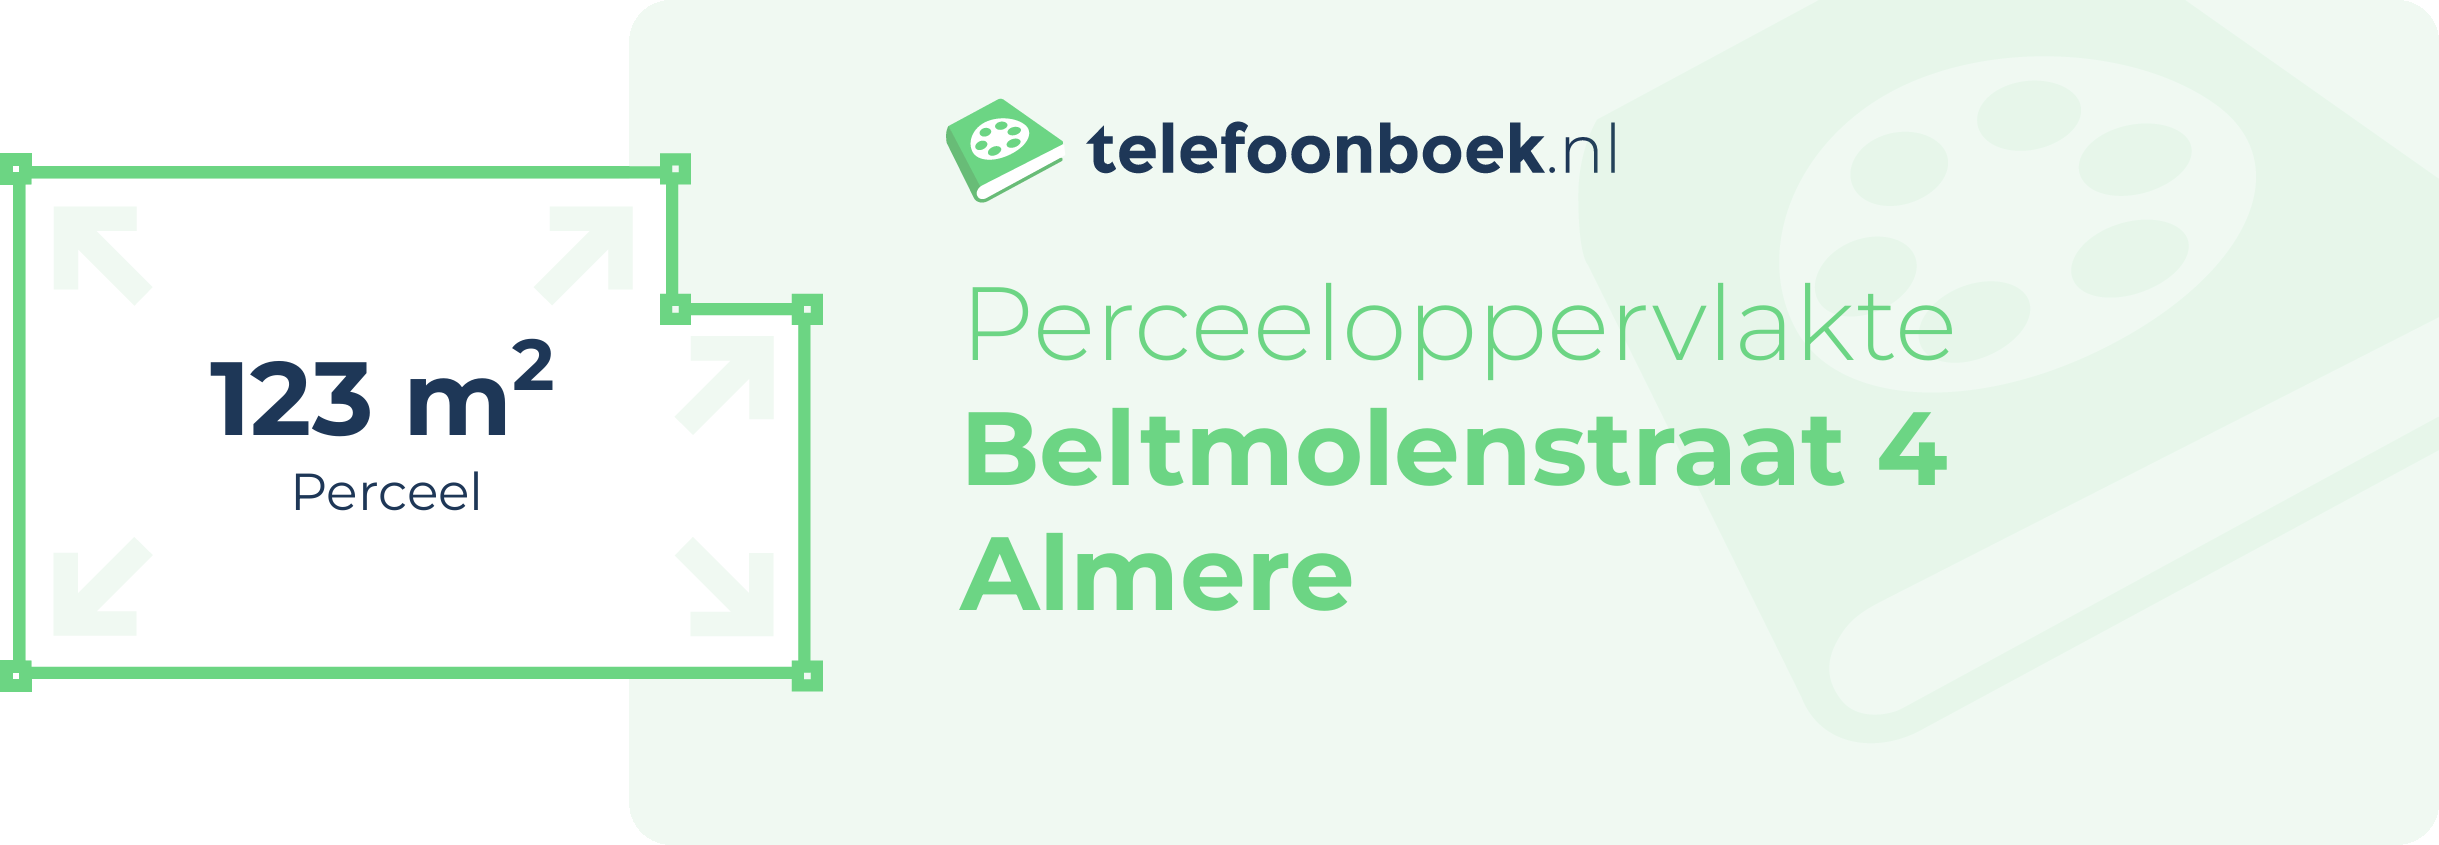 Perceeloppervlakte Beltmolenstraat 4 Almere